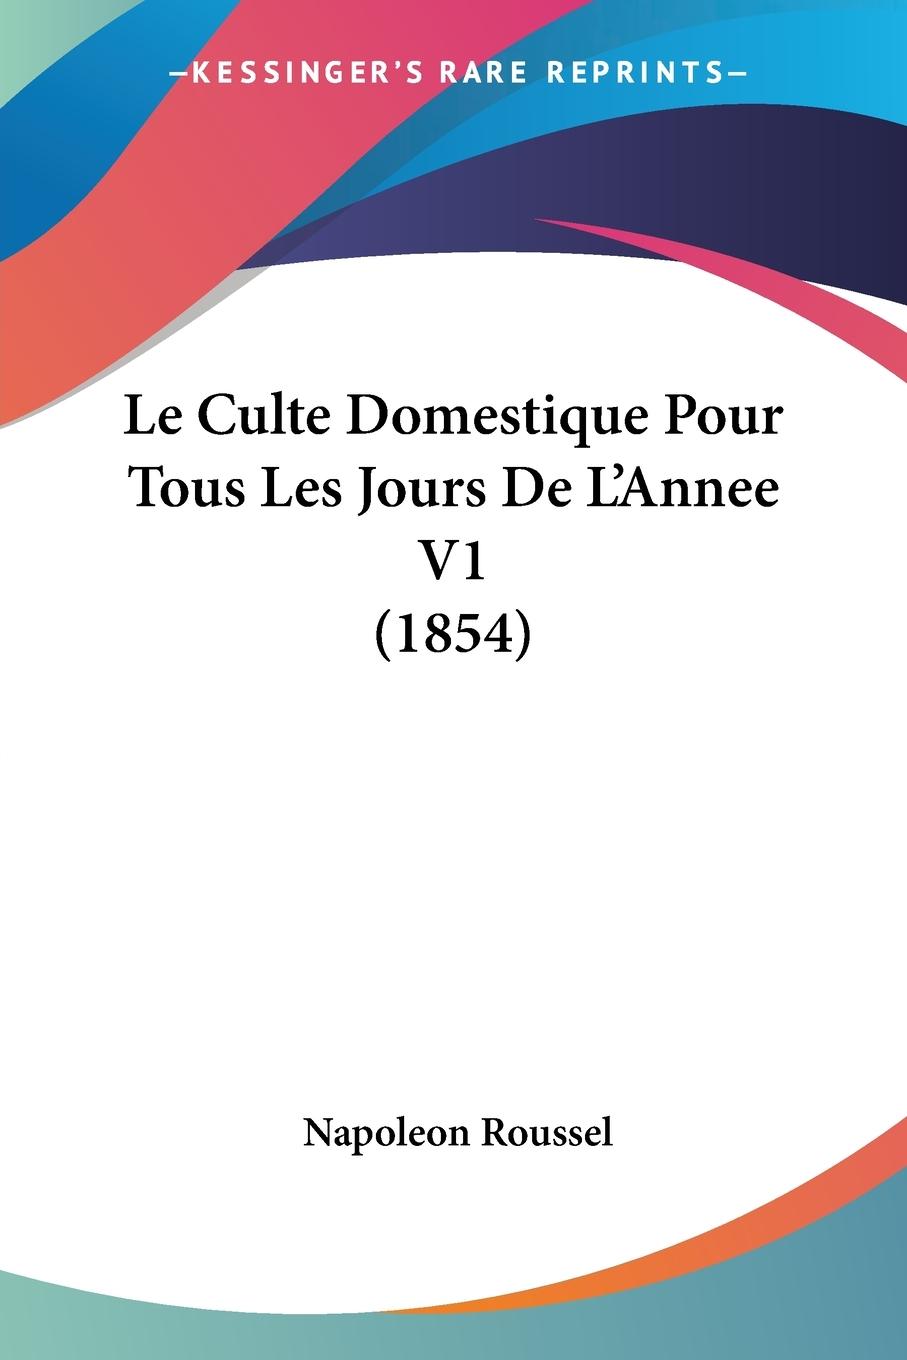 Le Culte Domestique Pour Tous Les Jours De L Annee V1 (1854) - Roussel, Napoleon